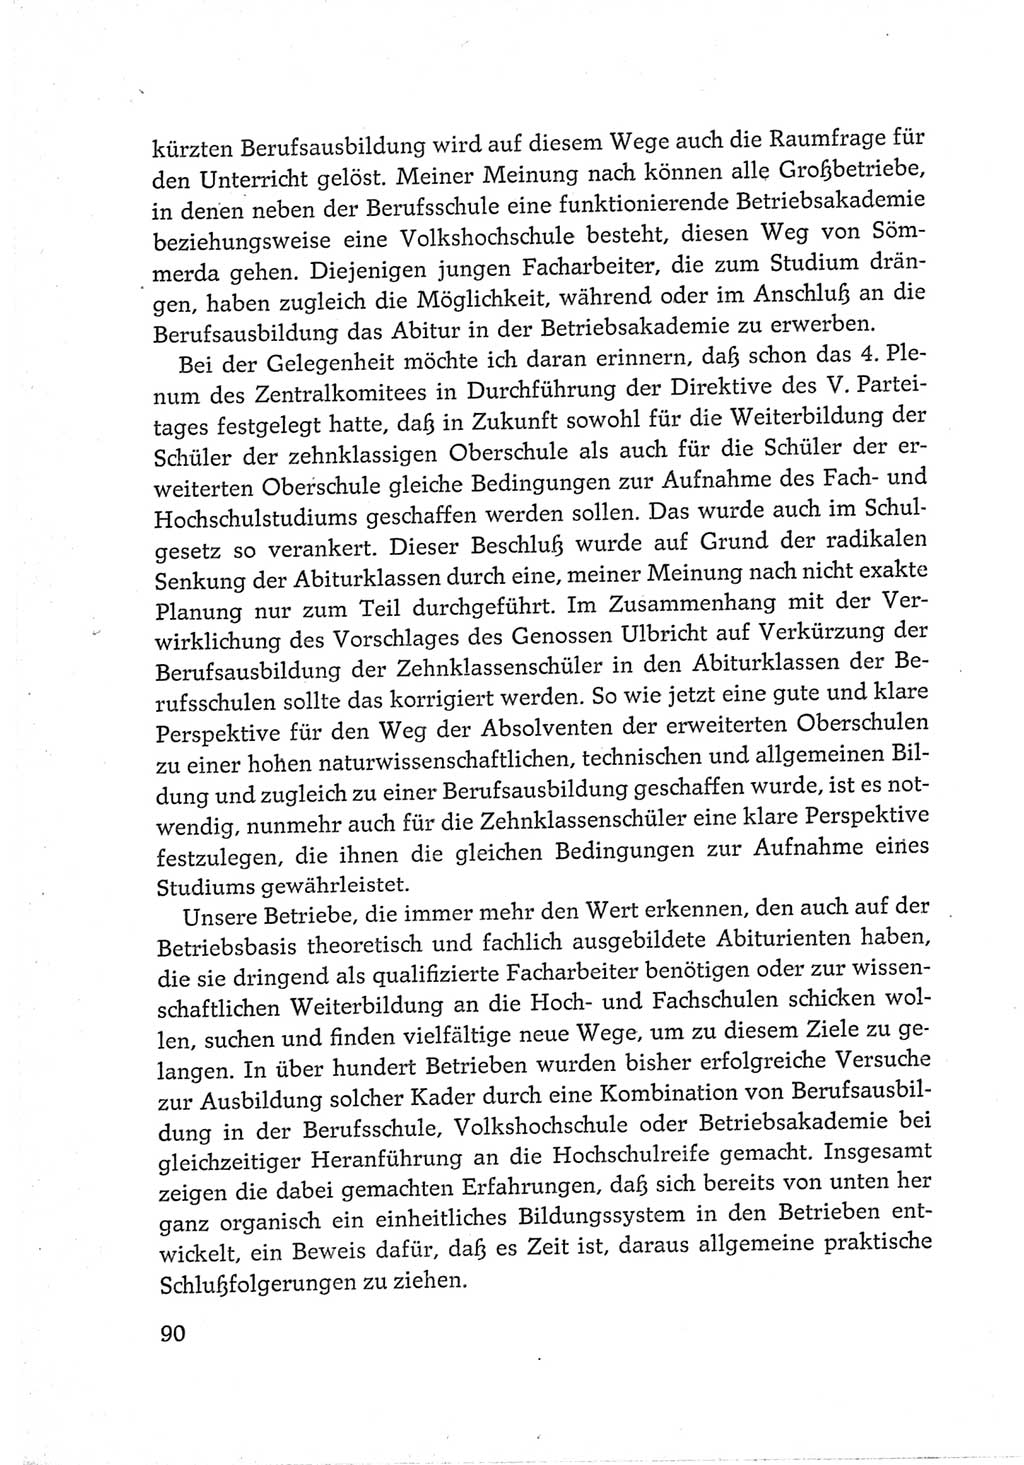 Protokoll der Verhandlungen des Ⅵ. Parteitages der Sozialistischen Einheitspartei Deutschlands (SED) [Deutsche Demokratische Republik (DDR)] 1963, Band Ⅲ, Seite 90 (Prot. Verh. Ⅵ. PT SED DDR 1963, Bd. Ⅲ, S. 90)